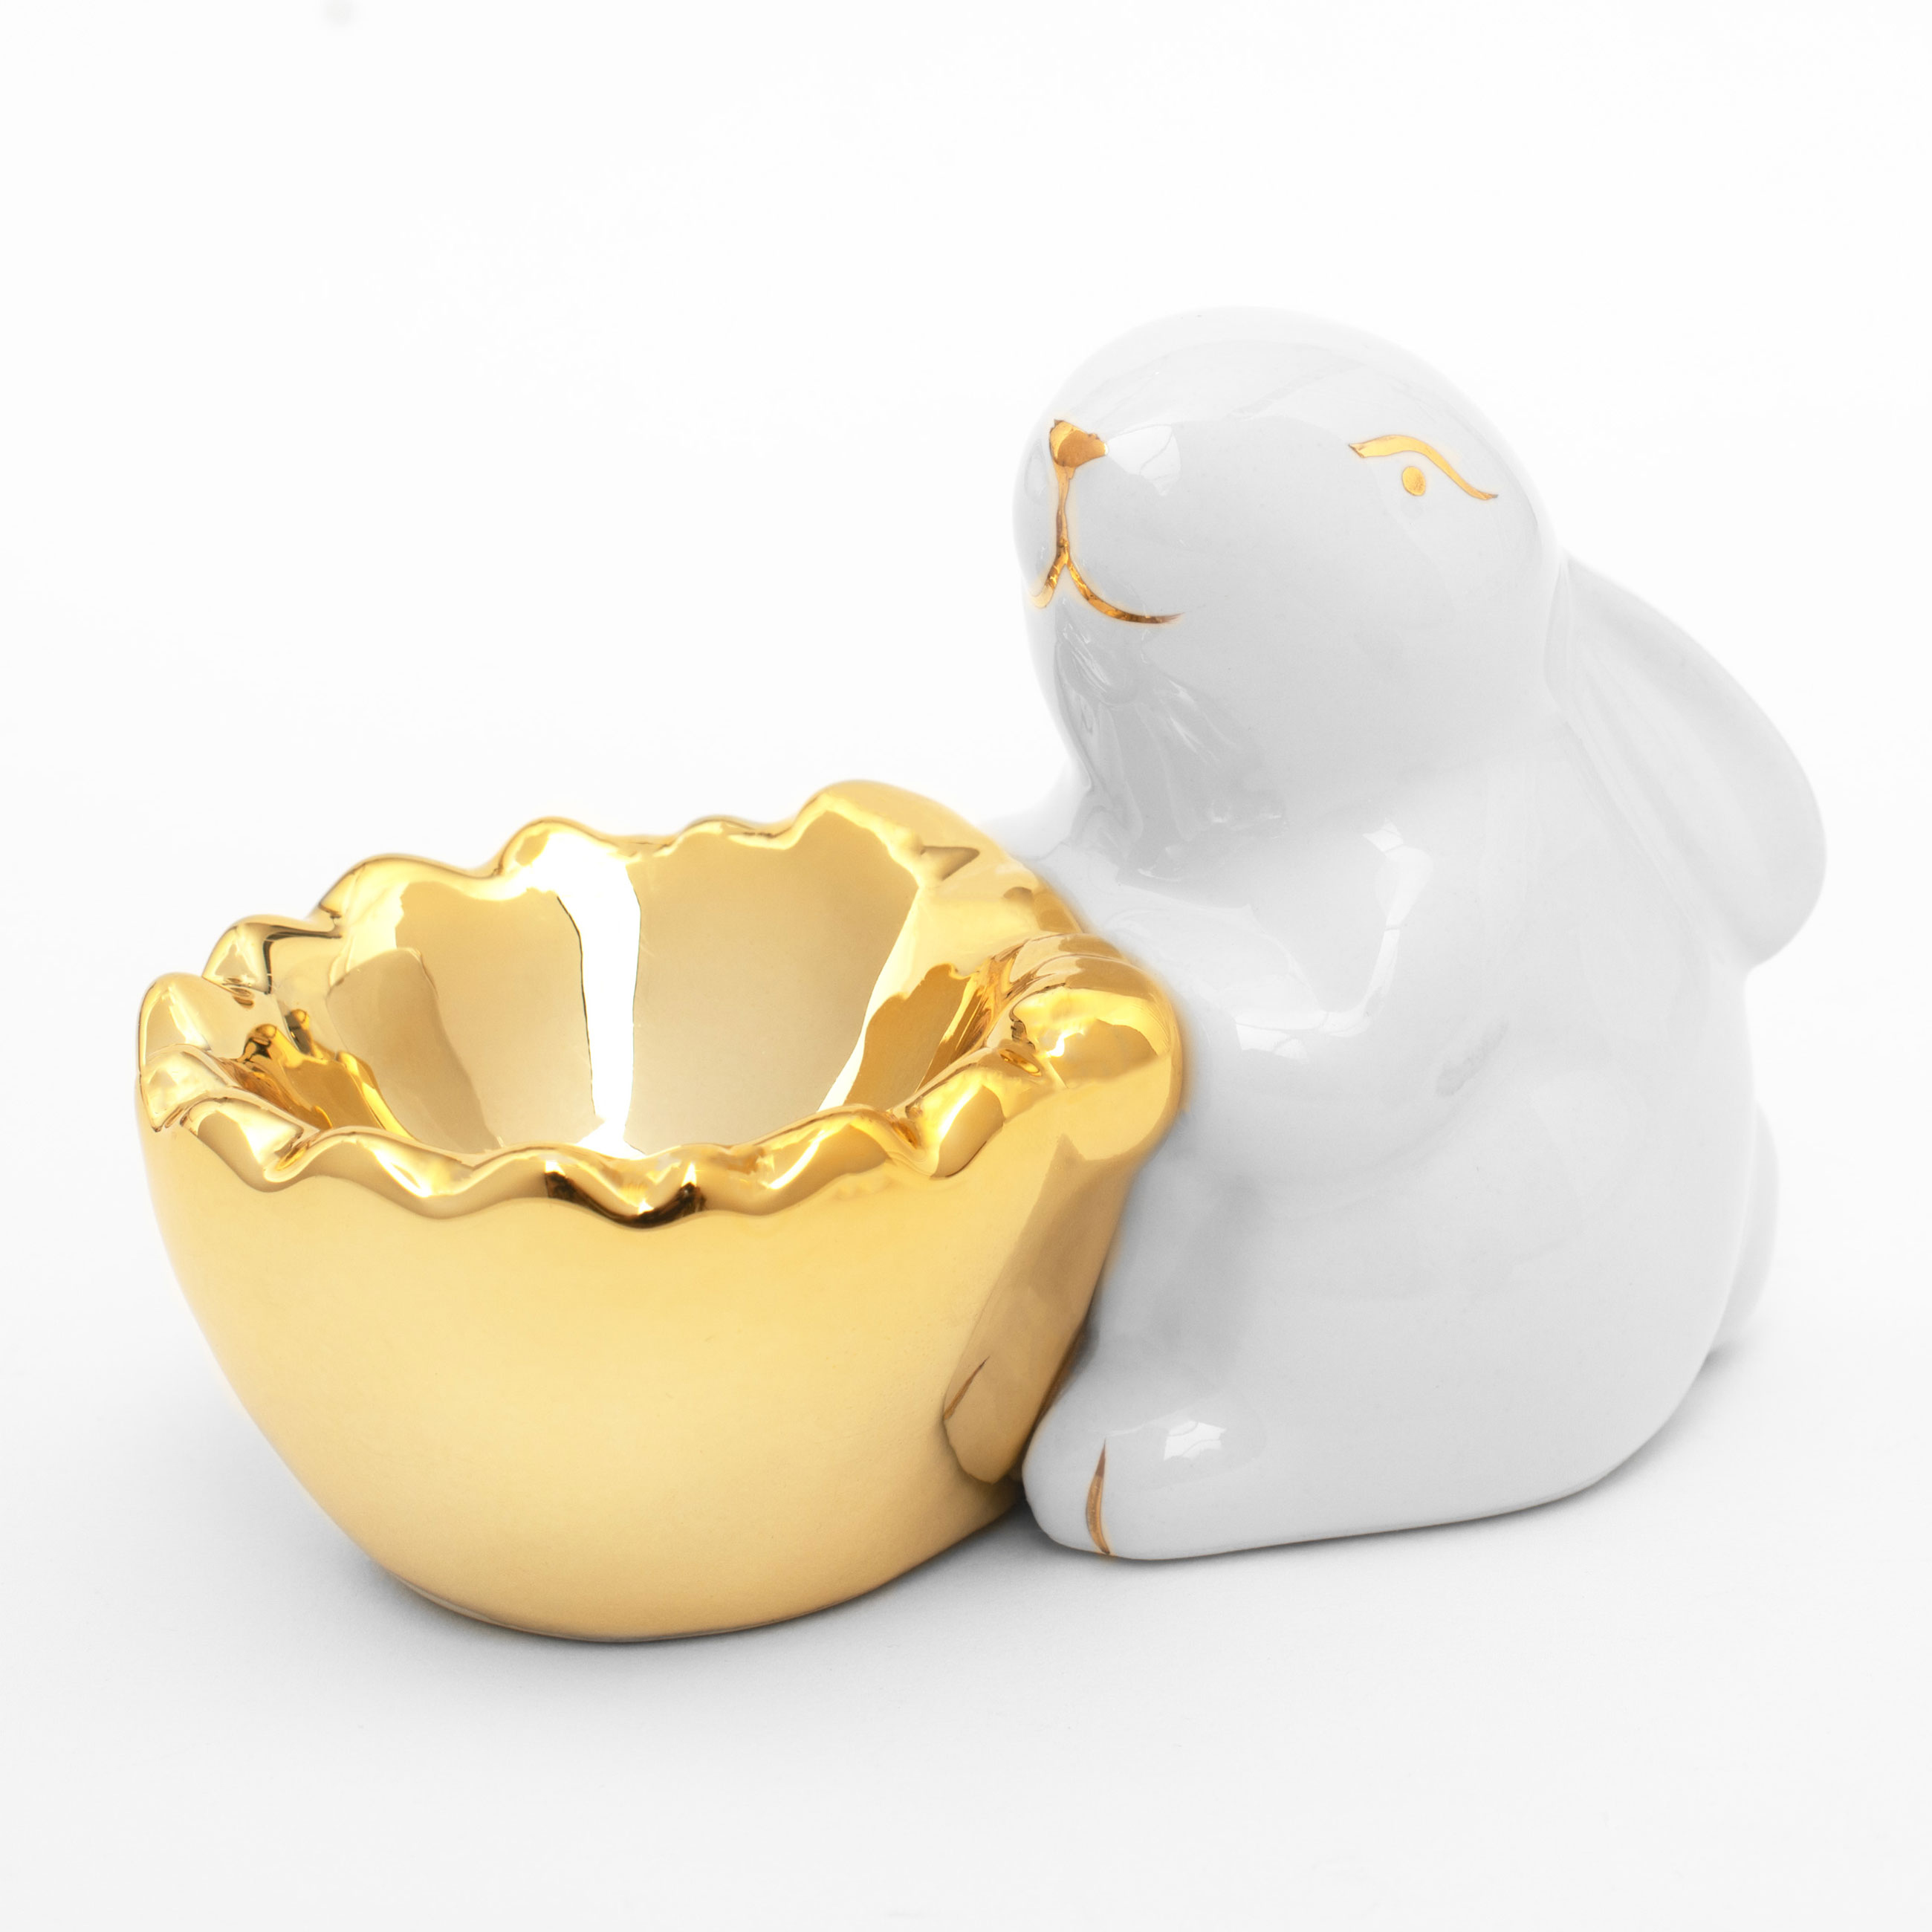 Подставка для яйца, 11 см, керамика, бело-золотистая, Кролик со скорлупой, Easter gold изображение № 2